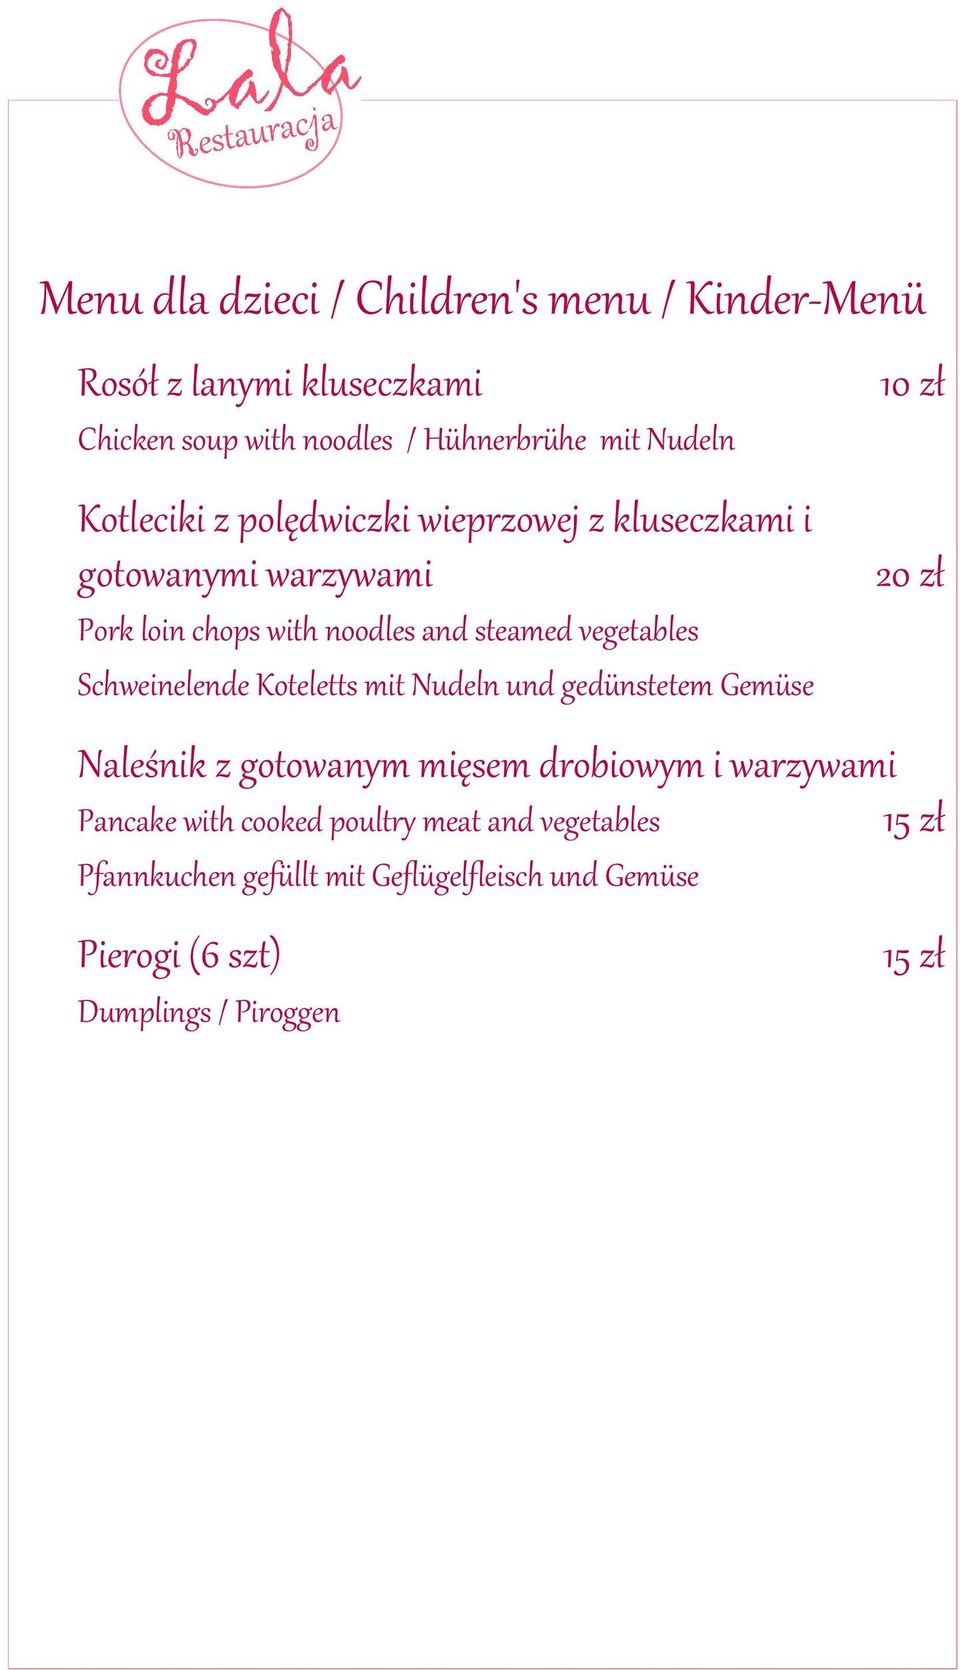 Schweinelende Koteletts mit Nudeln und gedünstetem Gemüse 10 zł 20 zł Naleśnik z gotowanym mięsem drobiowym i warzywami Pancake